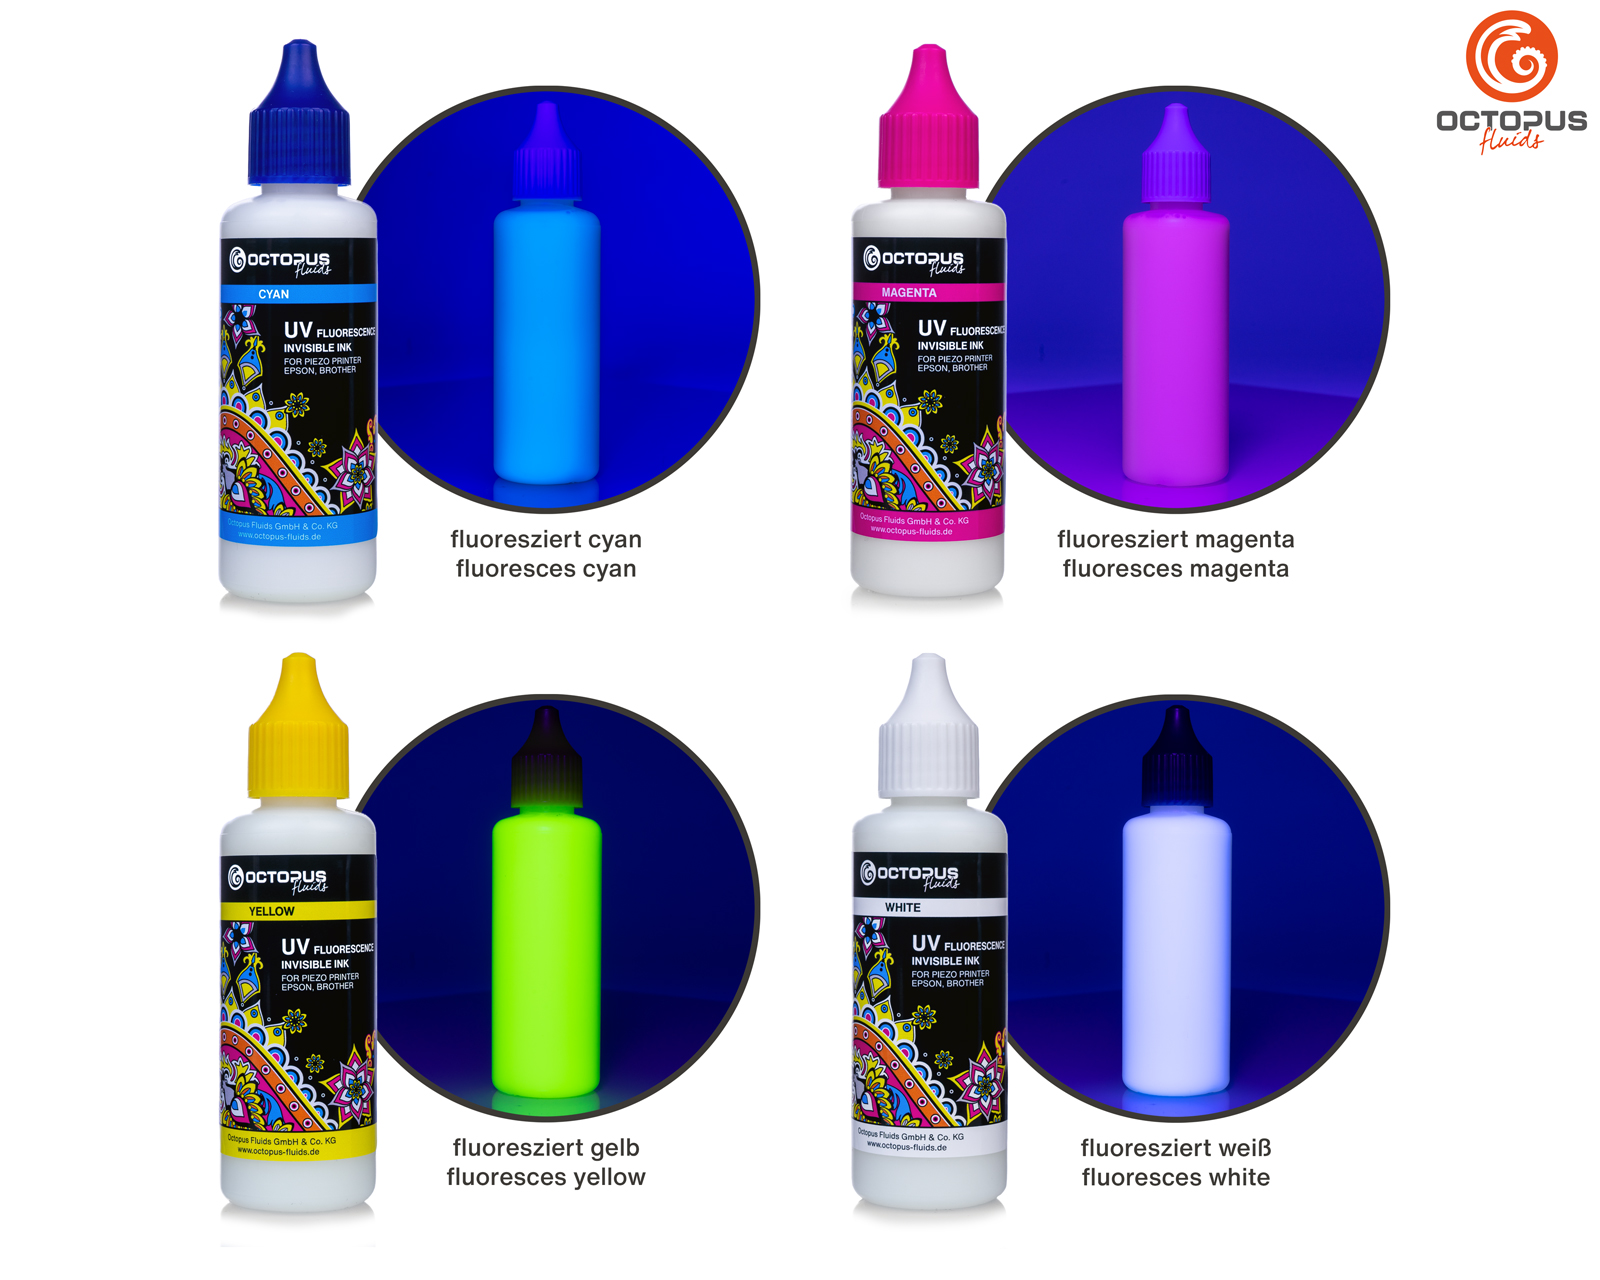 4x 50ml Inchiostro fluorescente UV invisibile per Epson e Brother, bianco, ciano, magenta, giallo